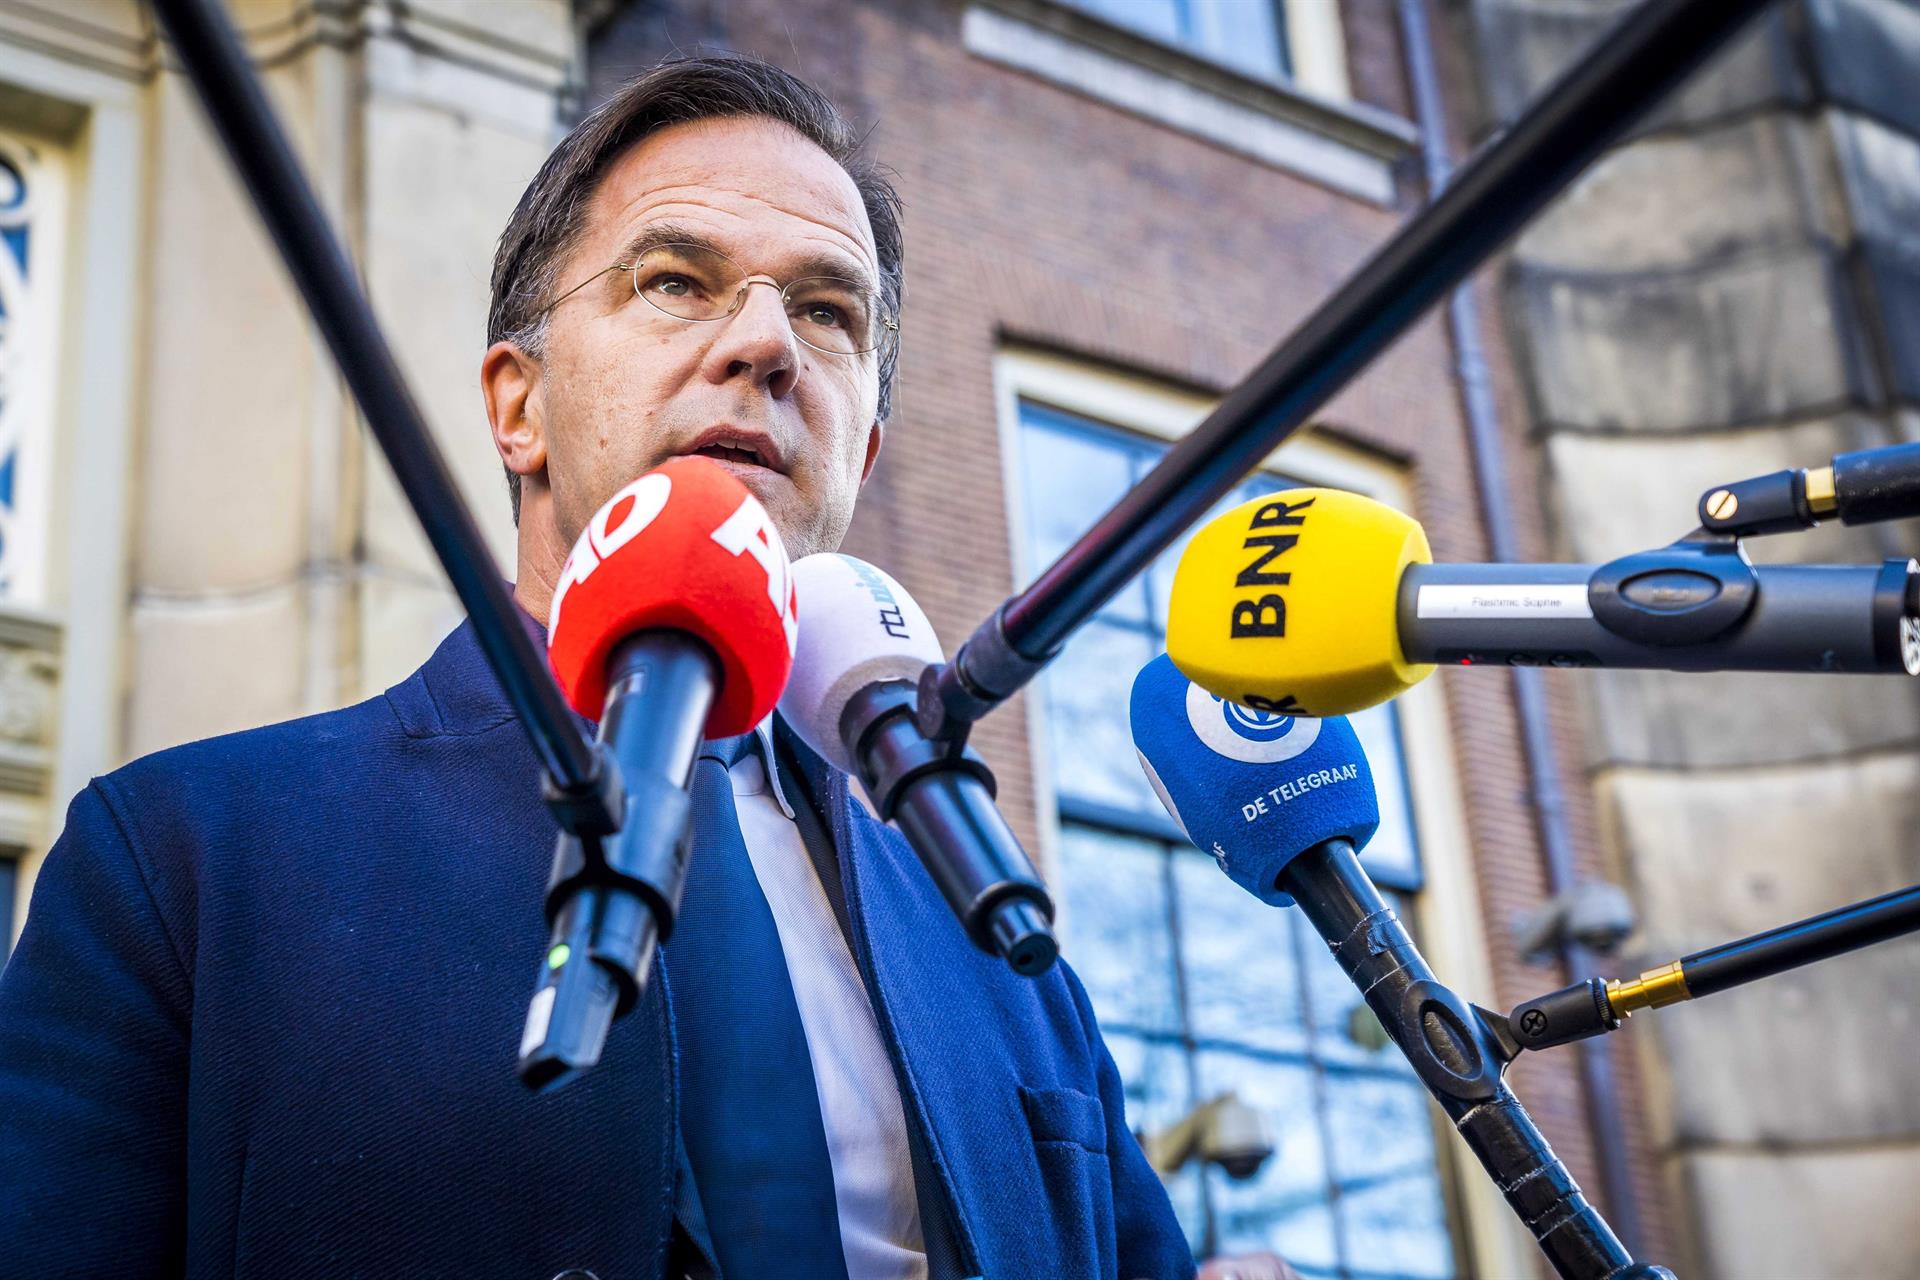 Primer ministro de Holanda llama ‘Idiotas’ a quienes protestan contra restricciones covid